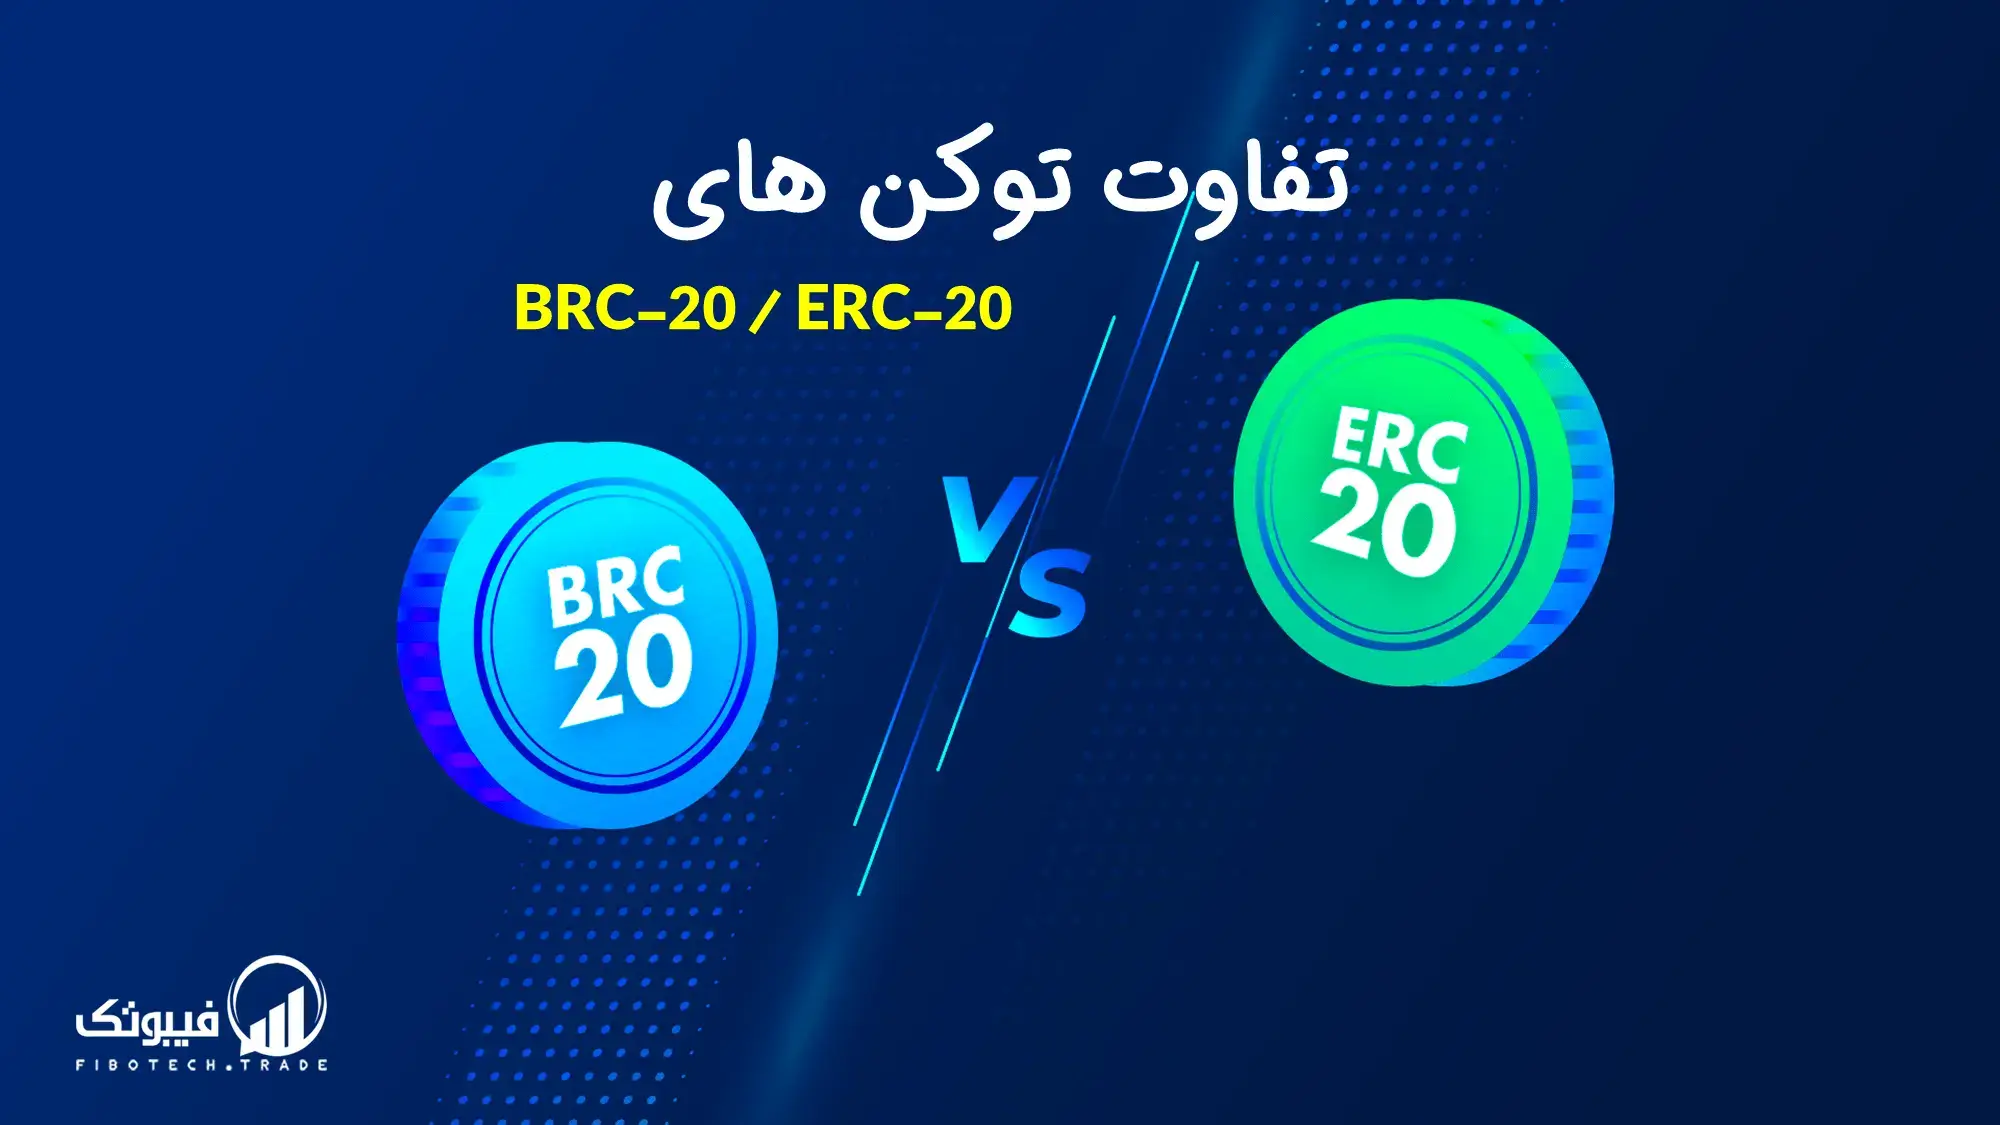 تفاوت توکن های BRC-20 و ERC-20 در چیست